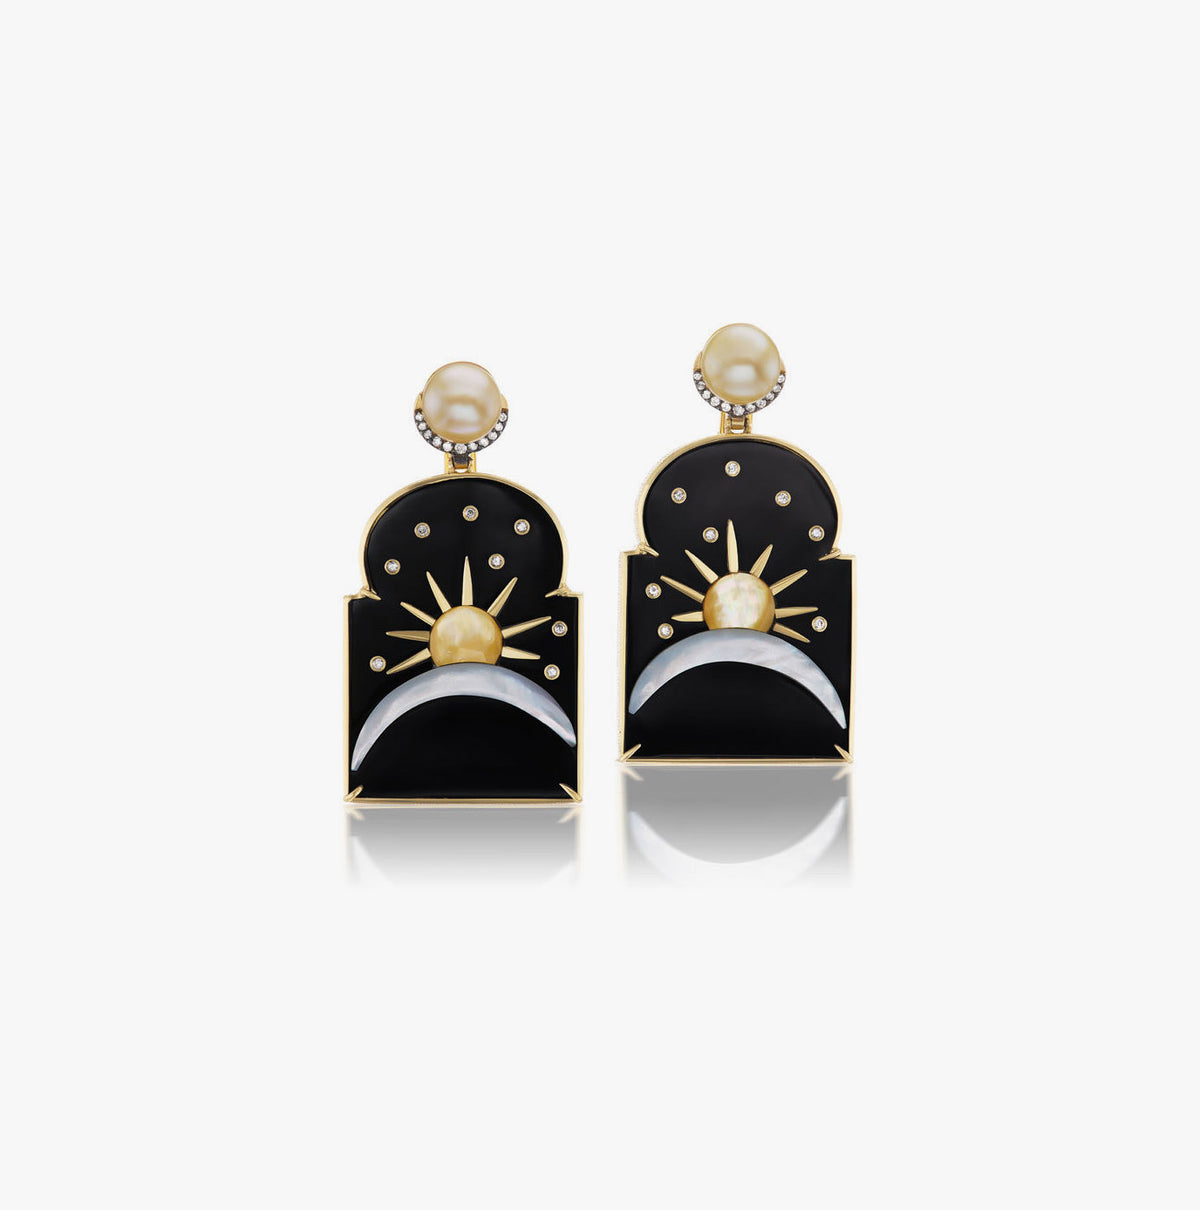 Silk road earrings